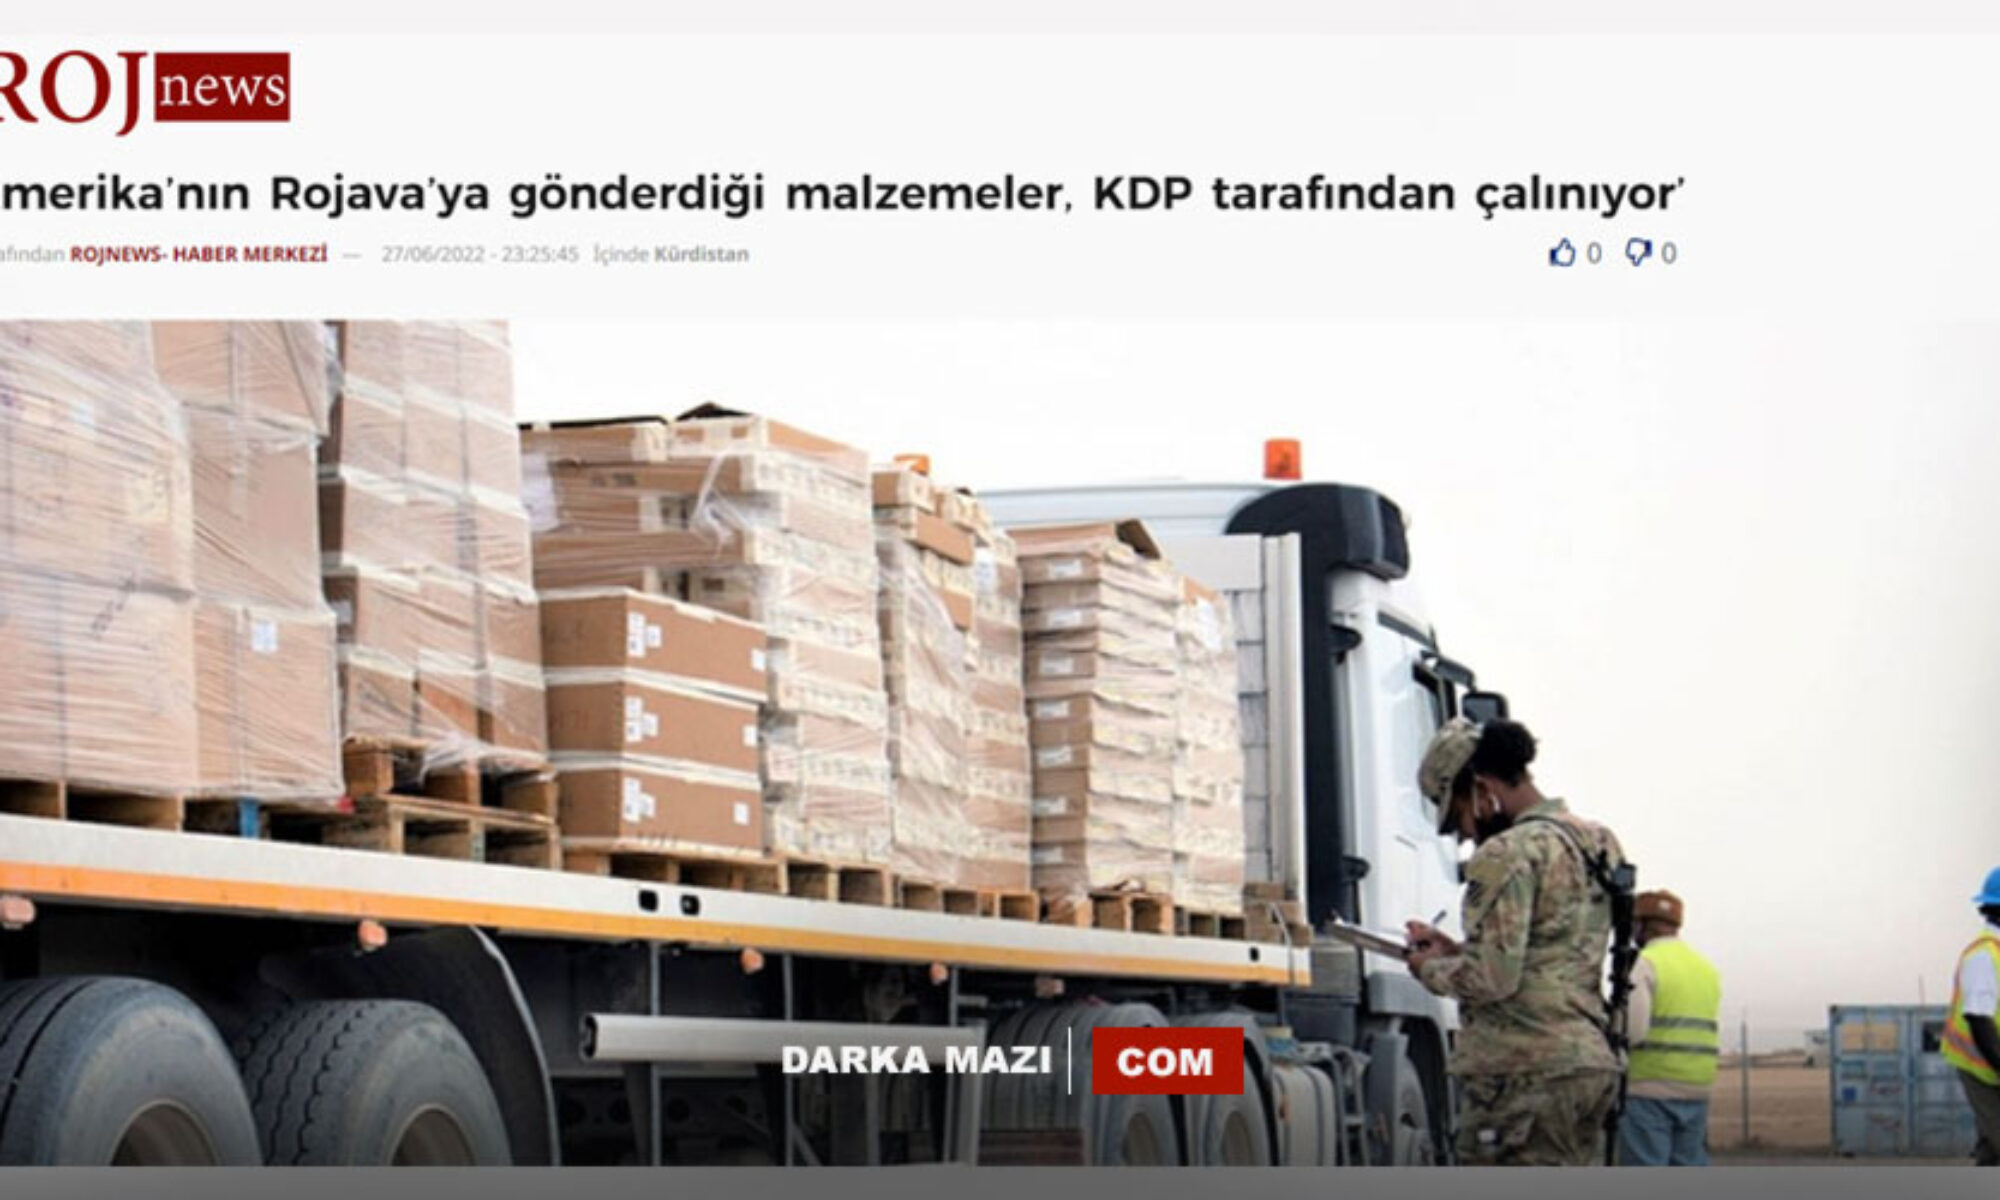 PKK ajansı Rojnews’ten yine yalan haber: Rojava’ya giden yardımlar çalınıyor